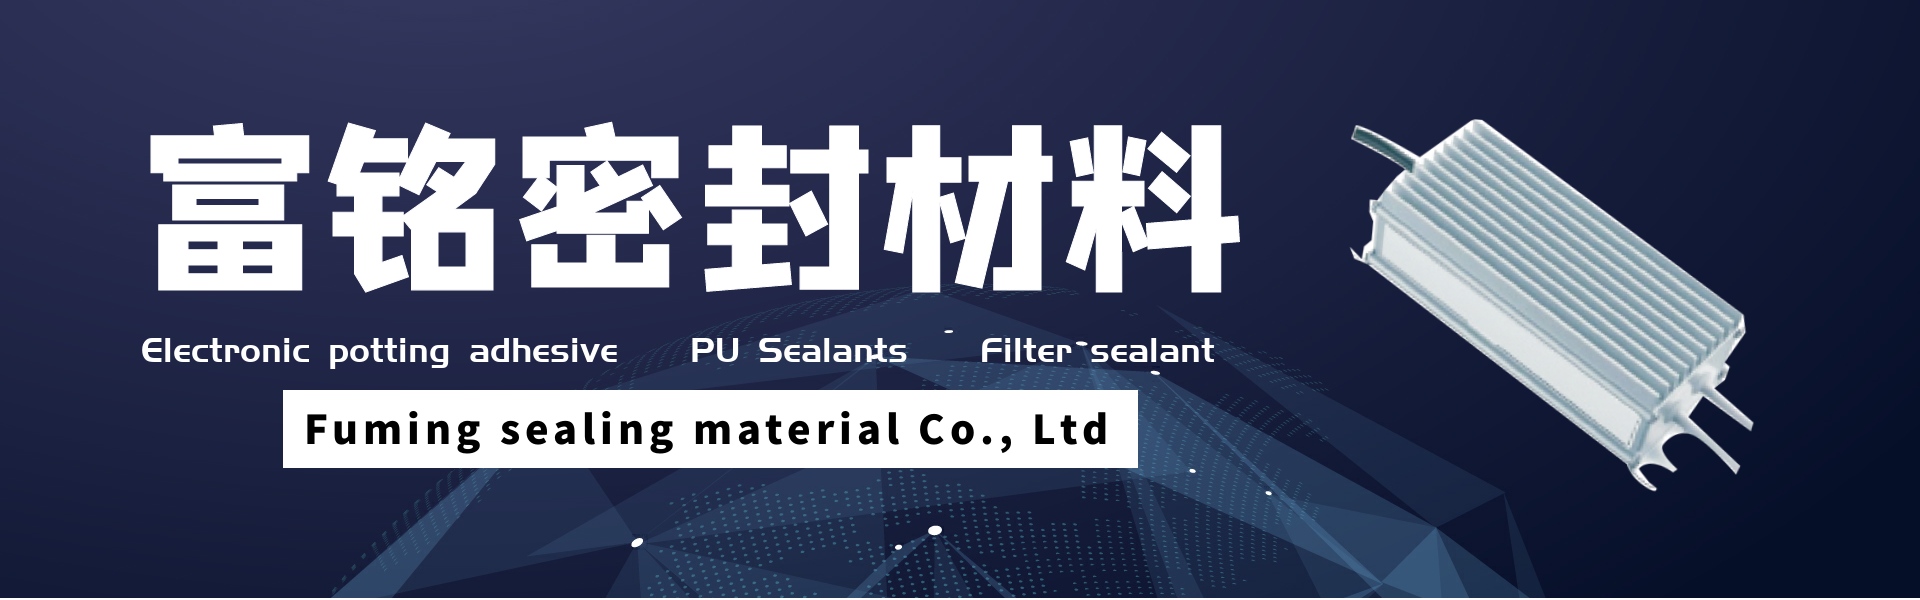 elektronické zalévací lepidlo, těsnící materiály pu, těsnicí hmota filtru,Dongguan fuming sealing material Co., Ltd